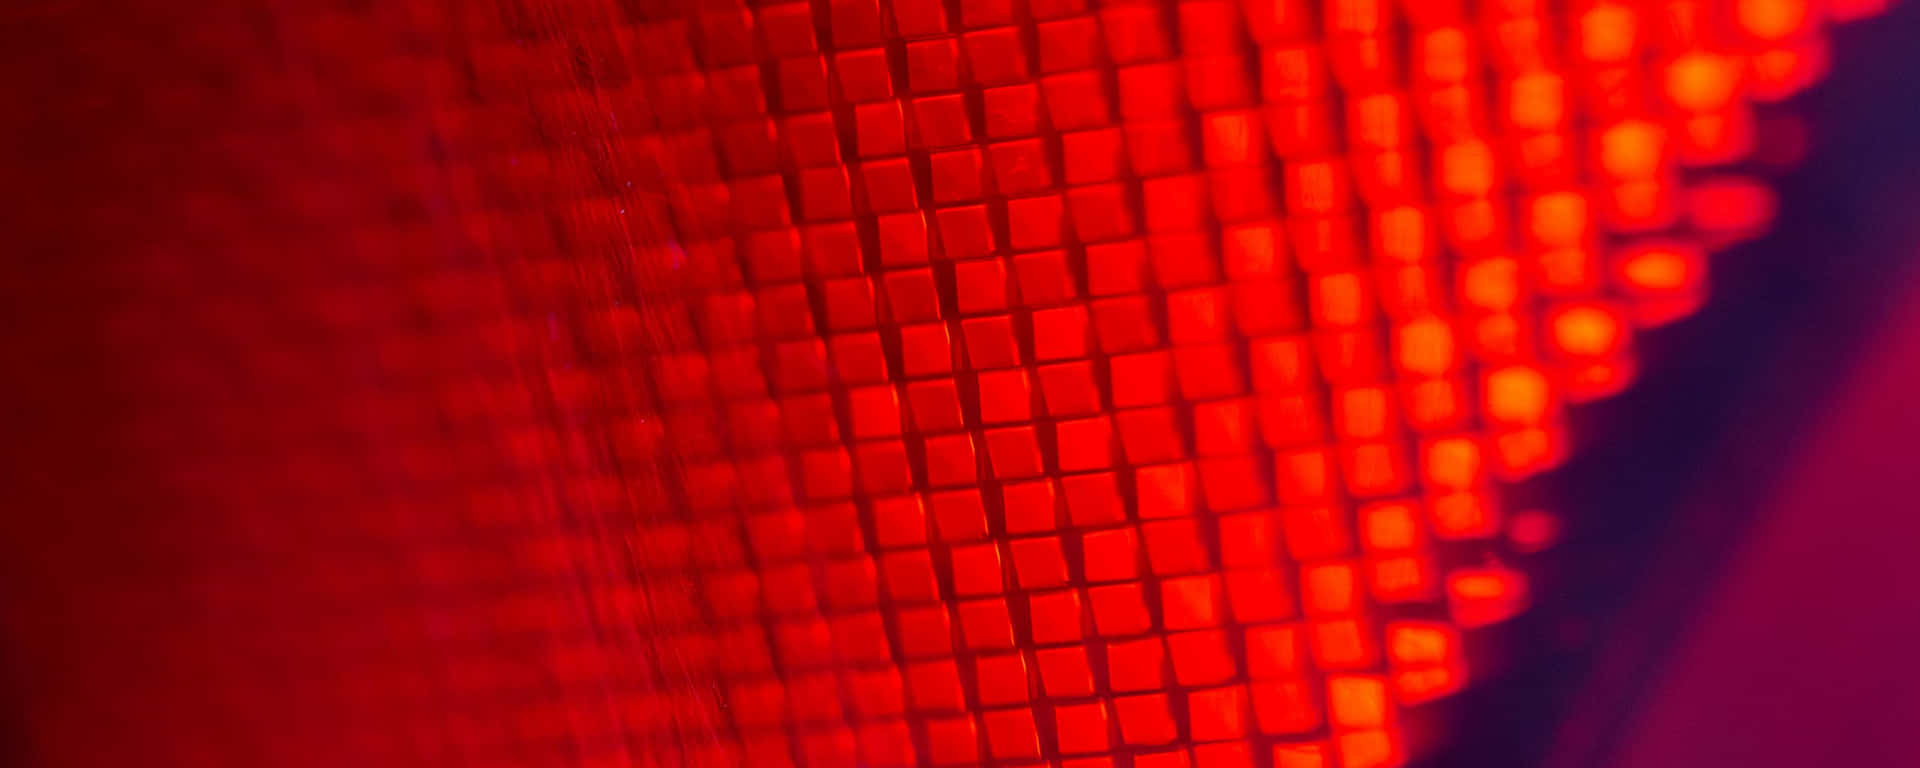 Quadradosmacro Vermelhos Ultra Wide Hd Papel de Parede